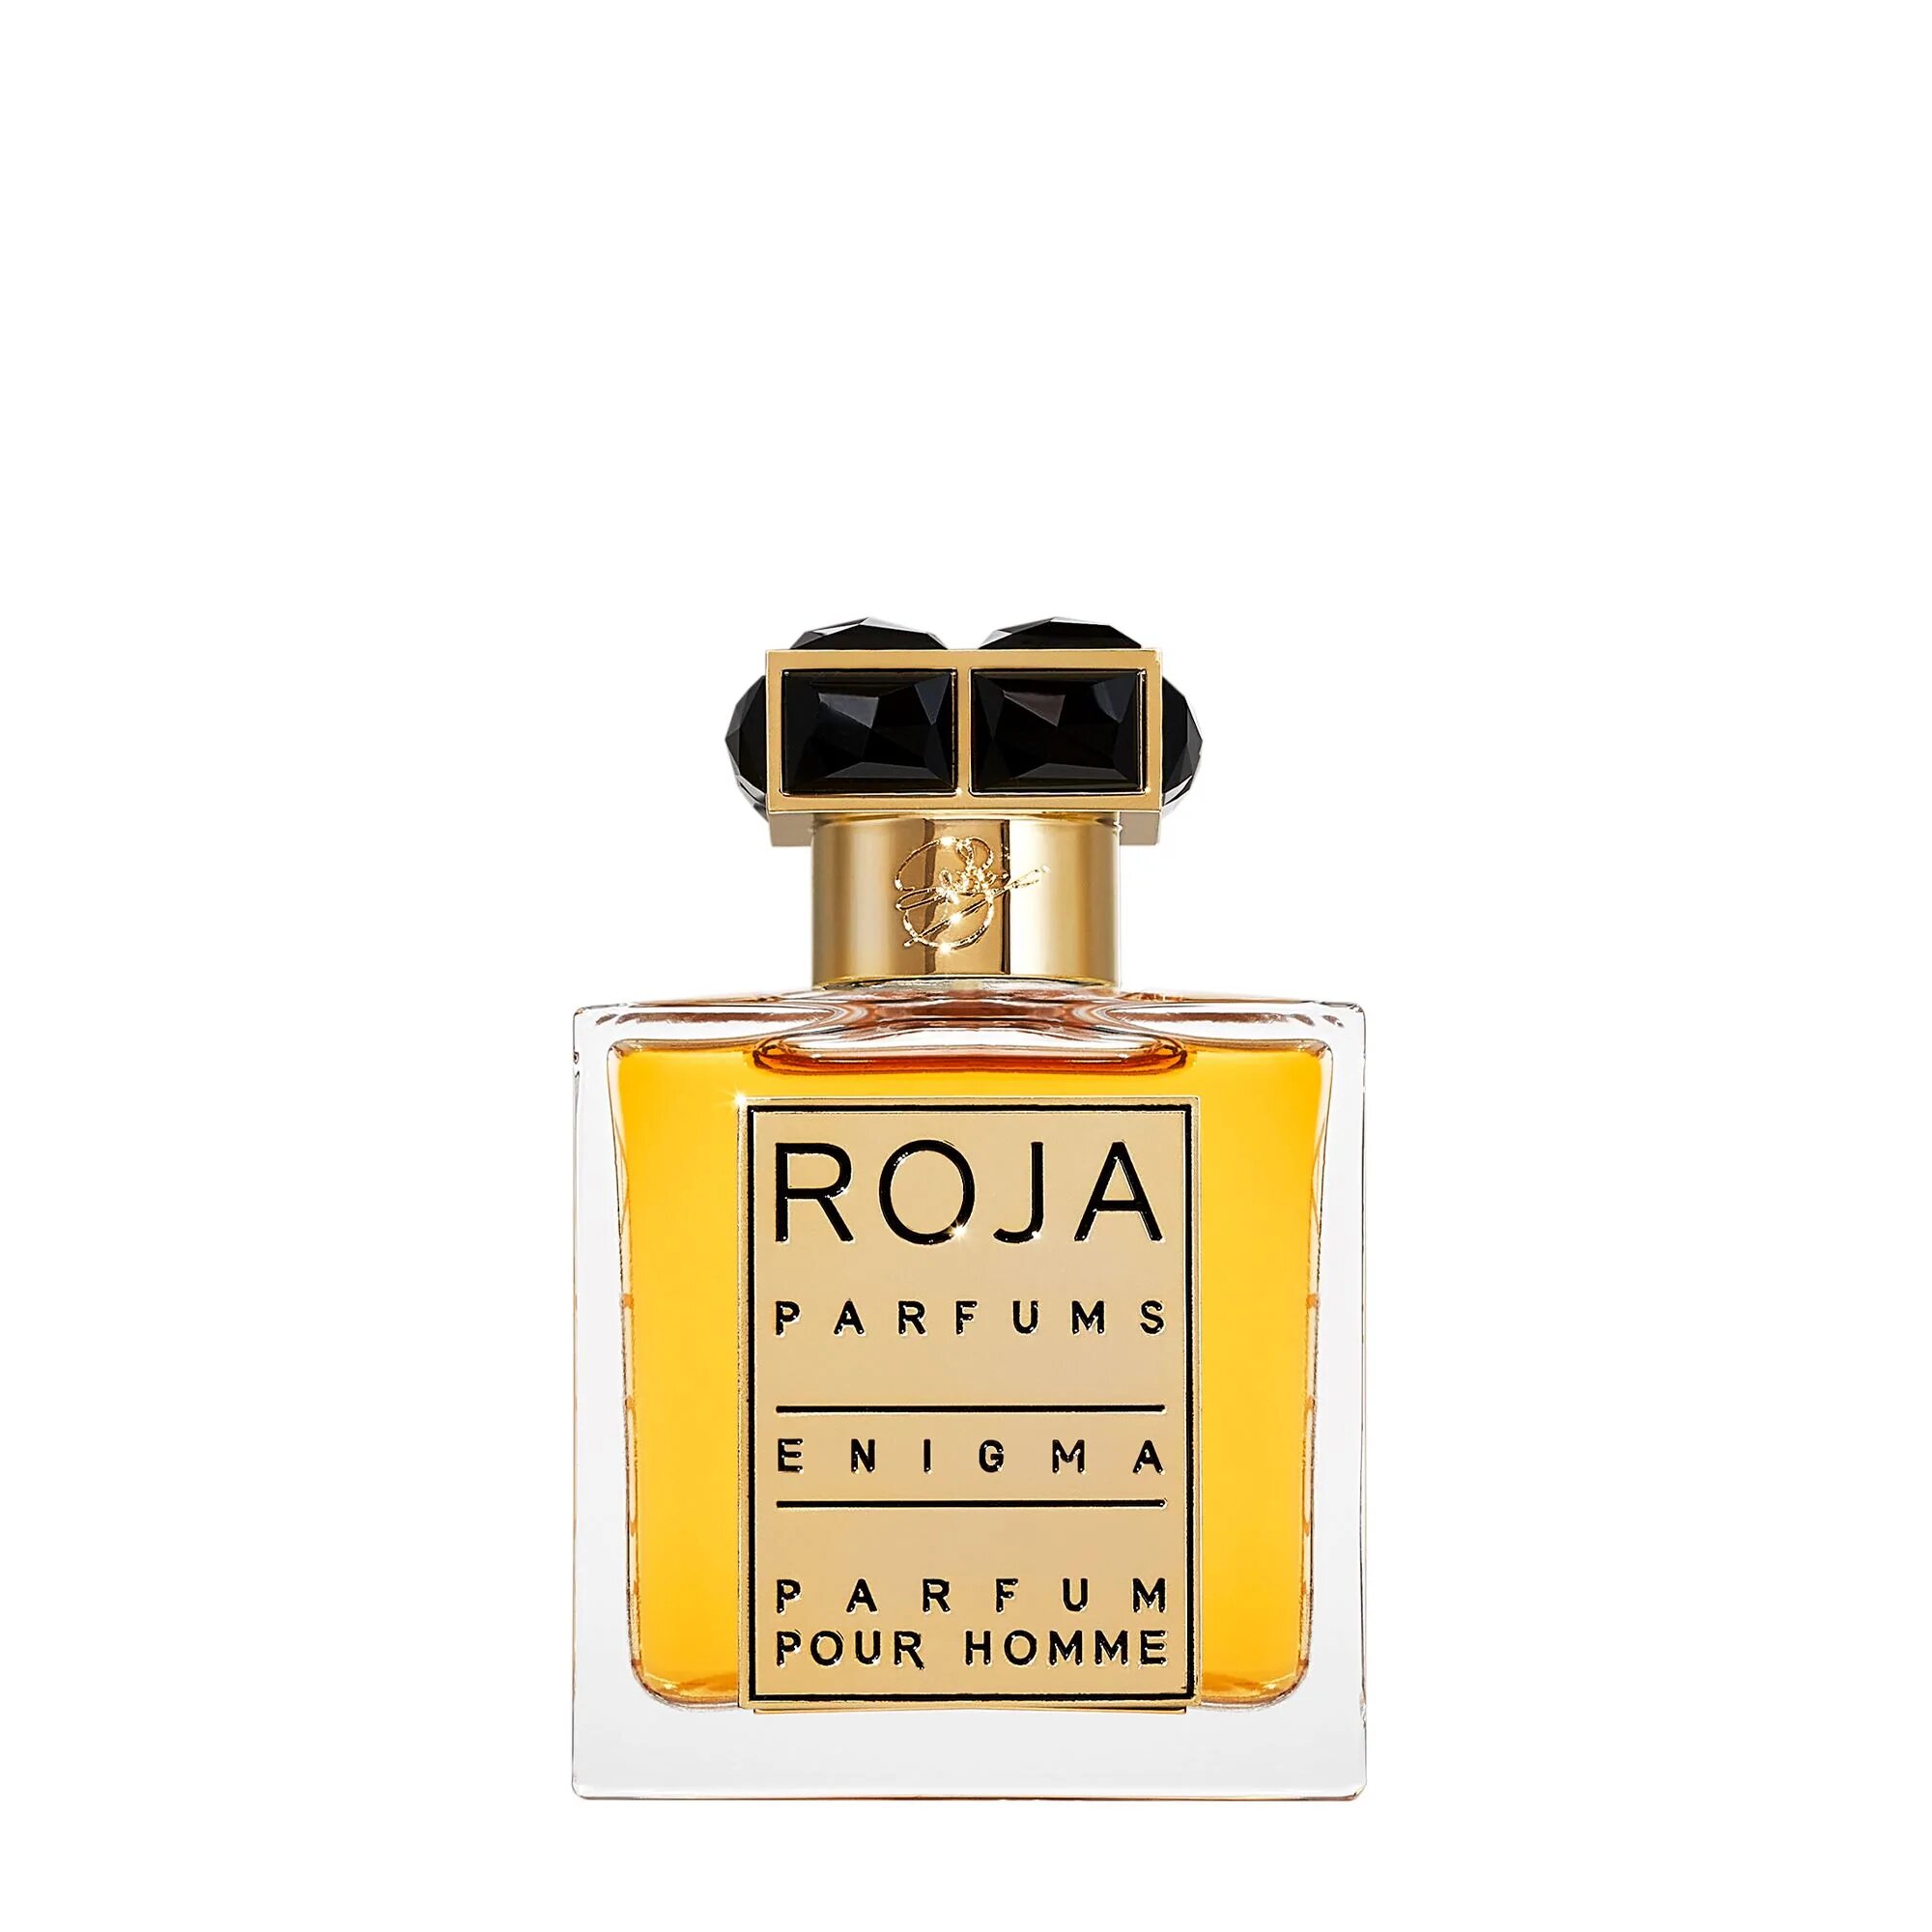 enigma-pour-homme-fragrance-roja-parfums-50ml-493480